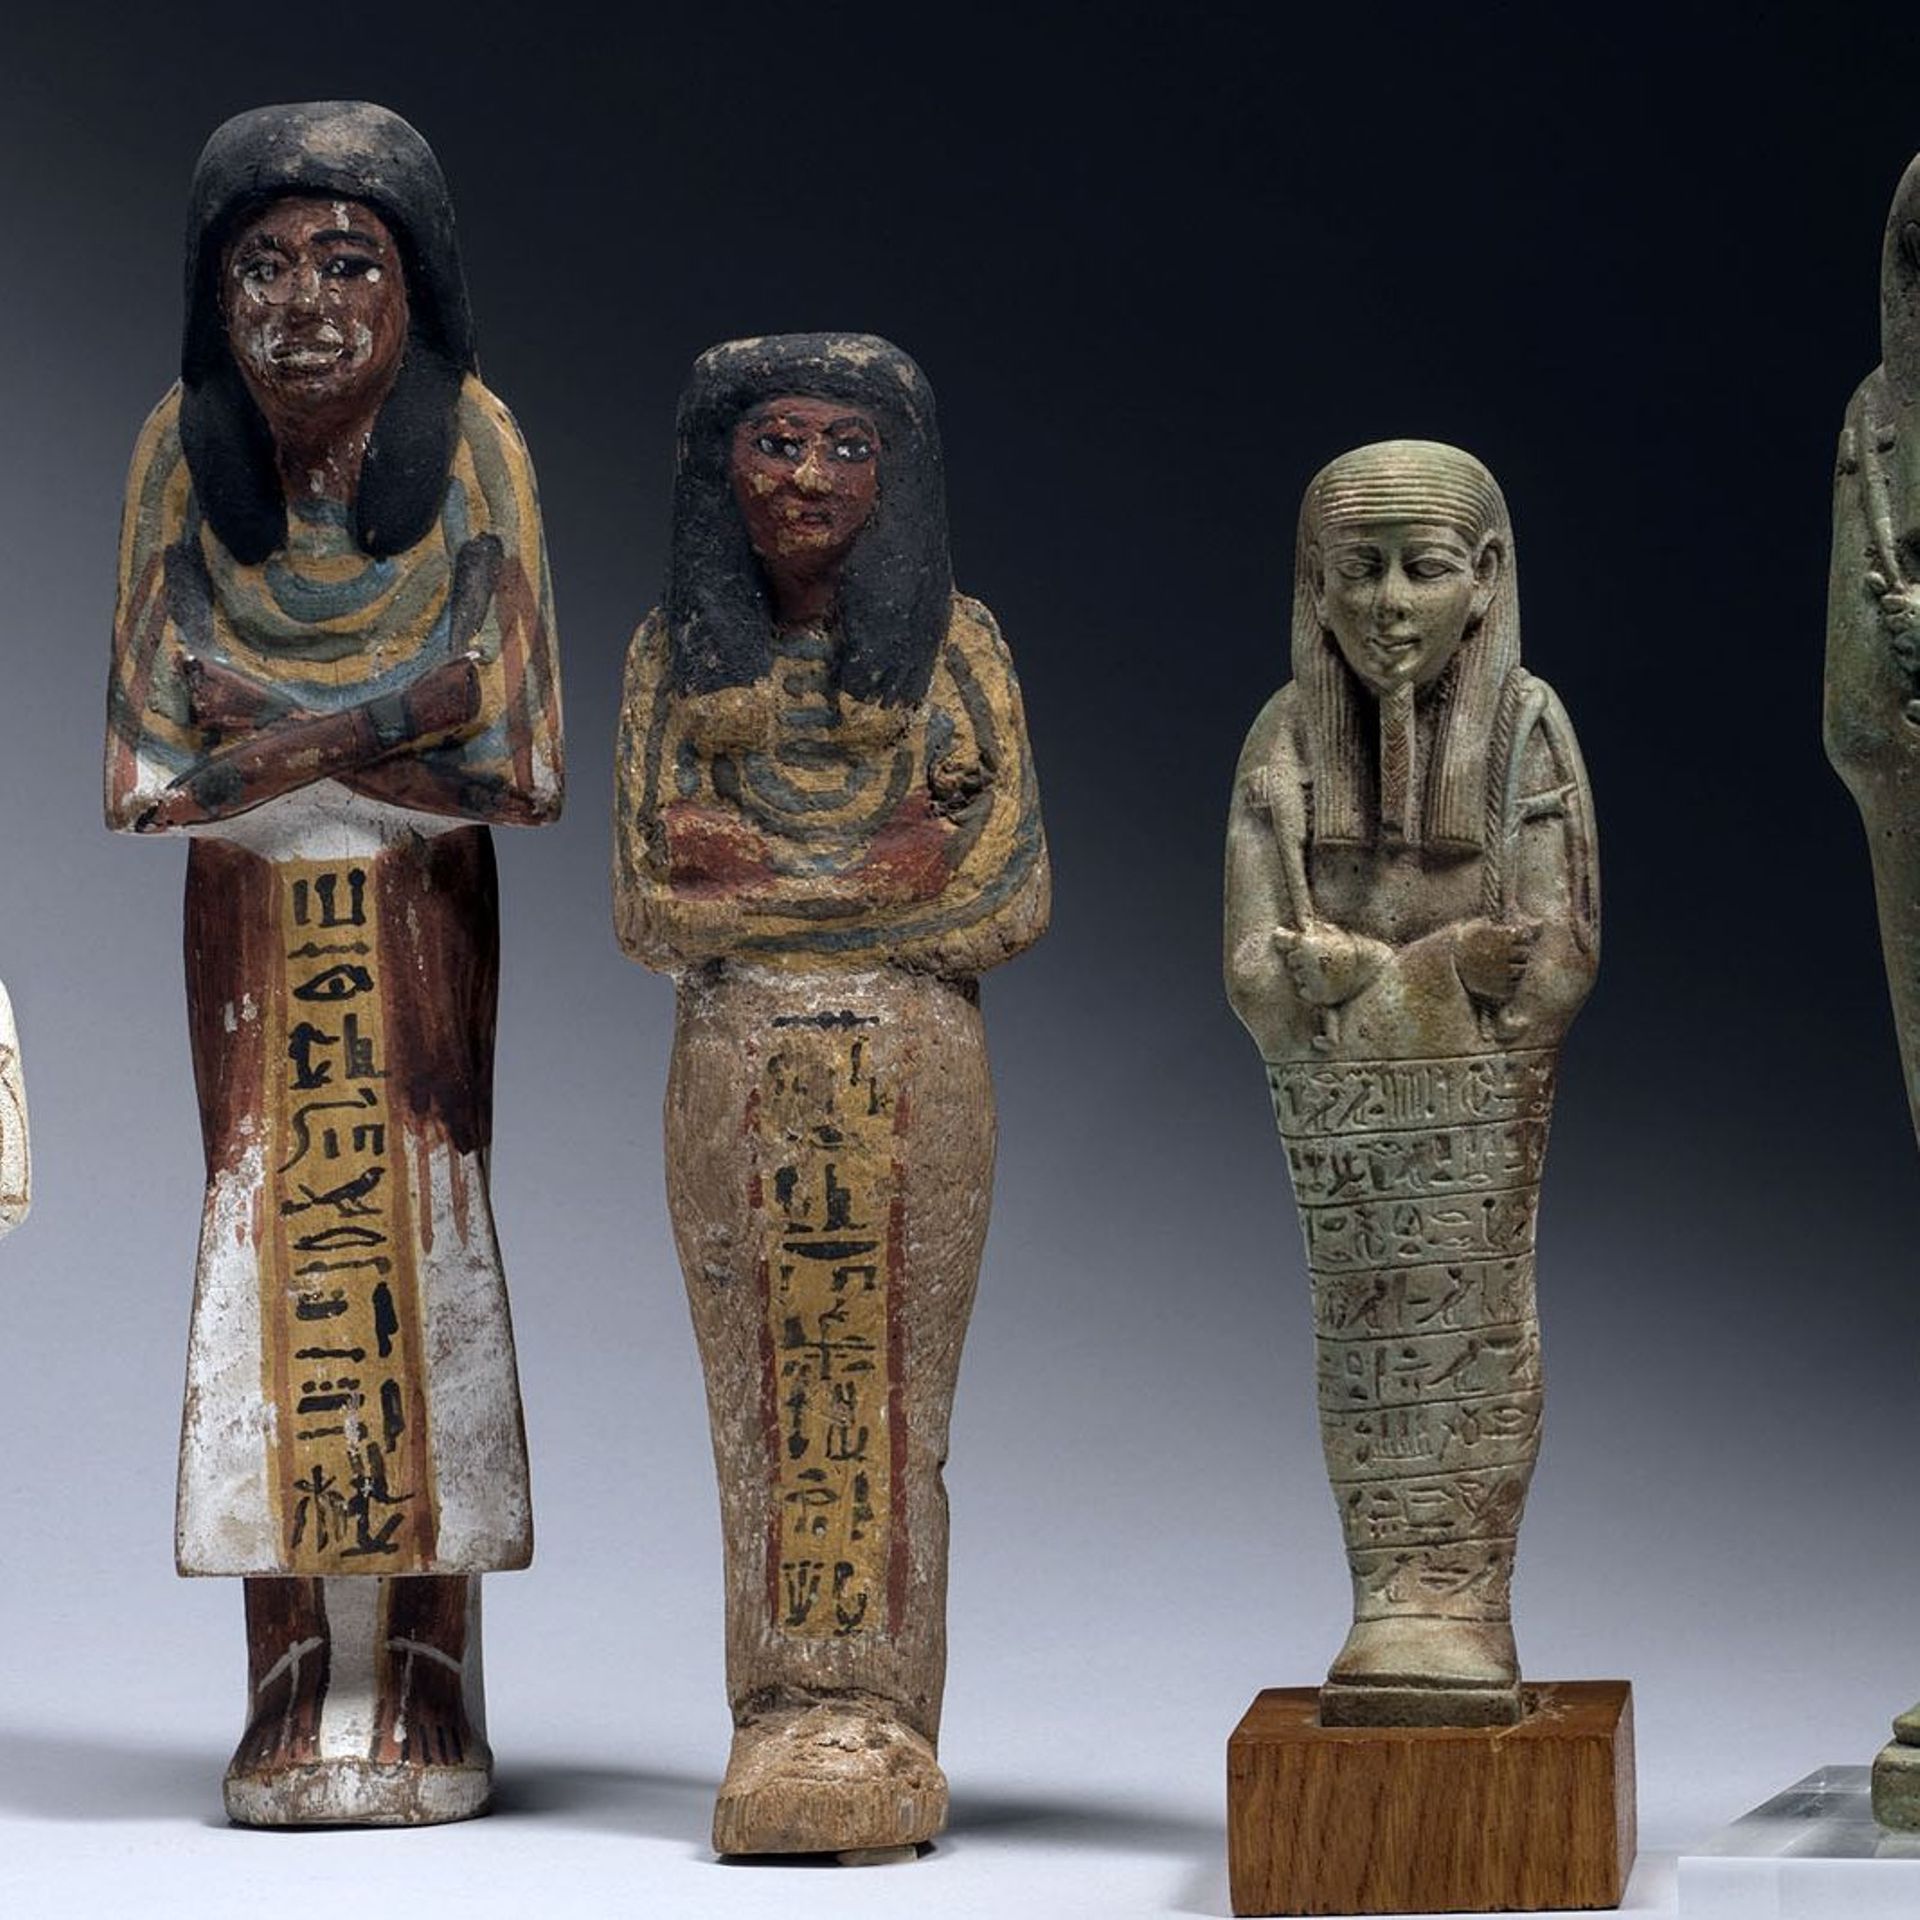 Ouchebtis de Kasa, Ouahibrê, Tchahorpata, Amenmès et Nefertari - Égypte, Nouvel Empire à Basse Époque - 
Faïence, bois
